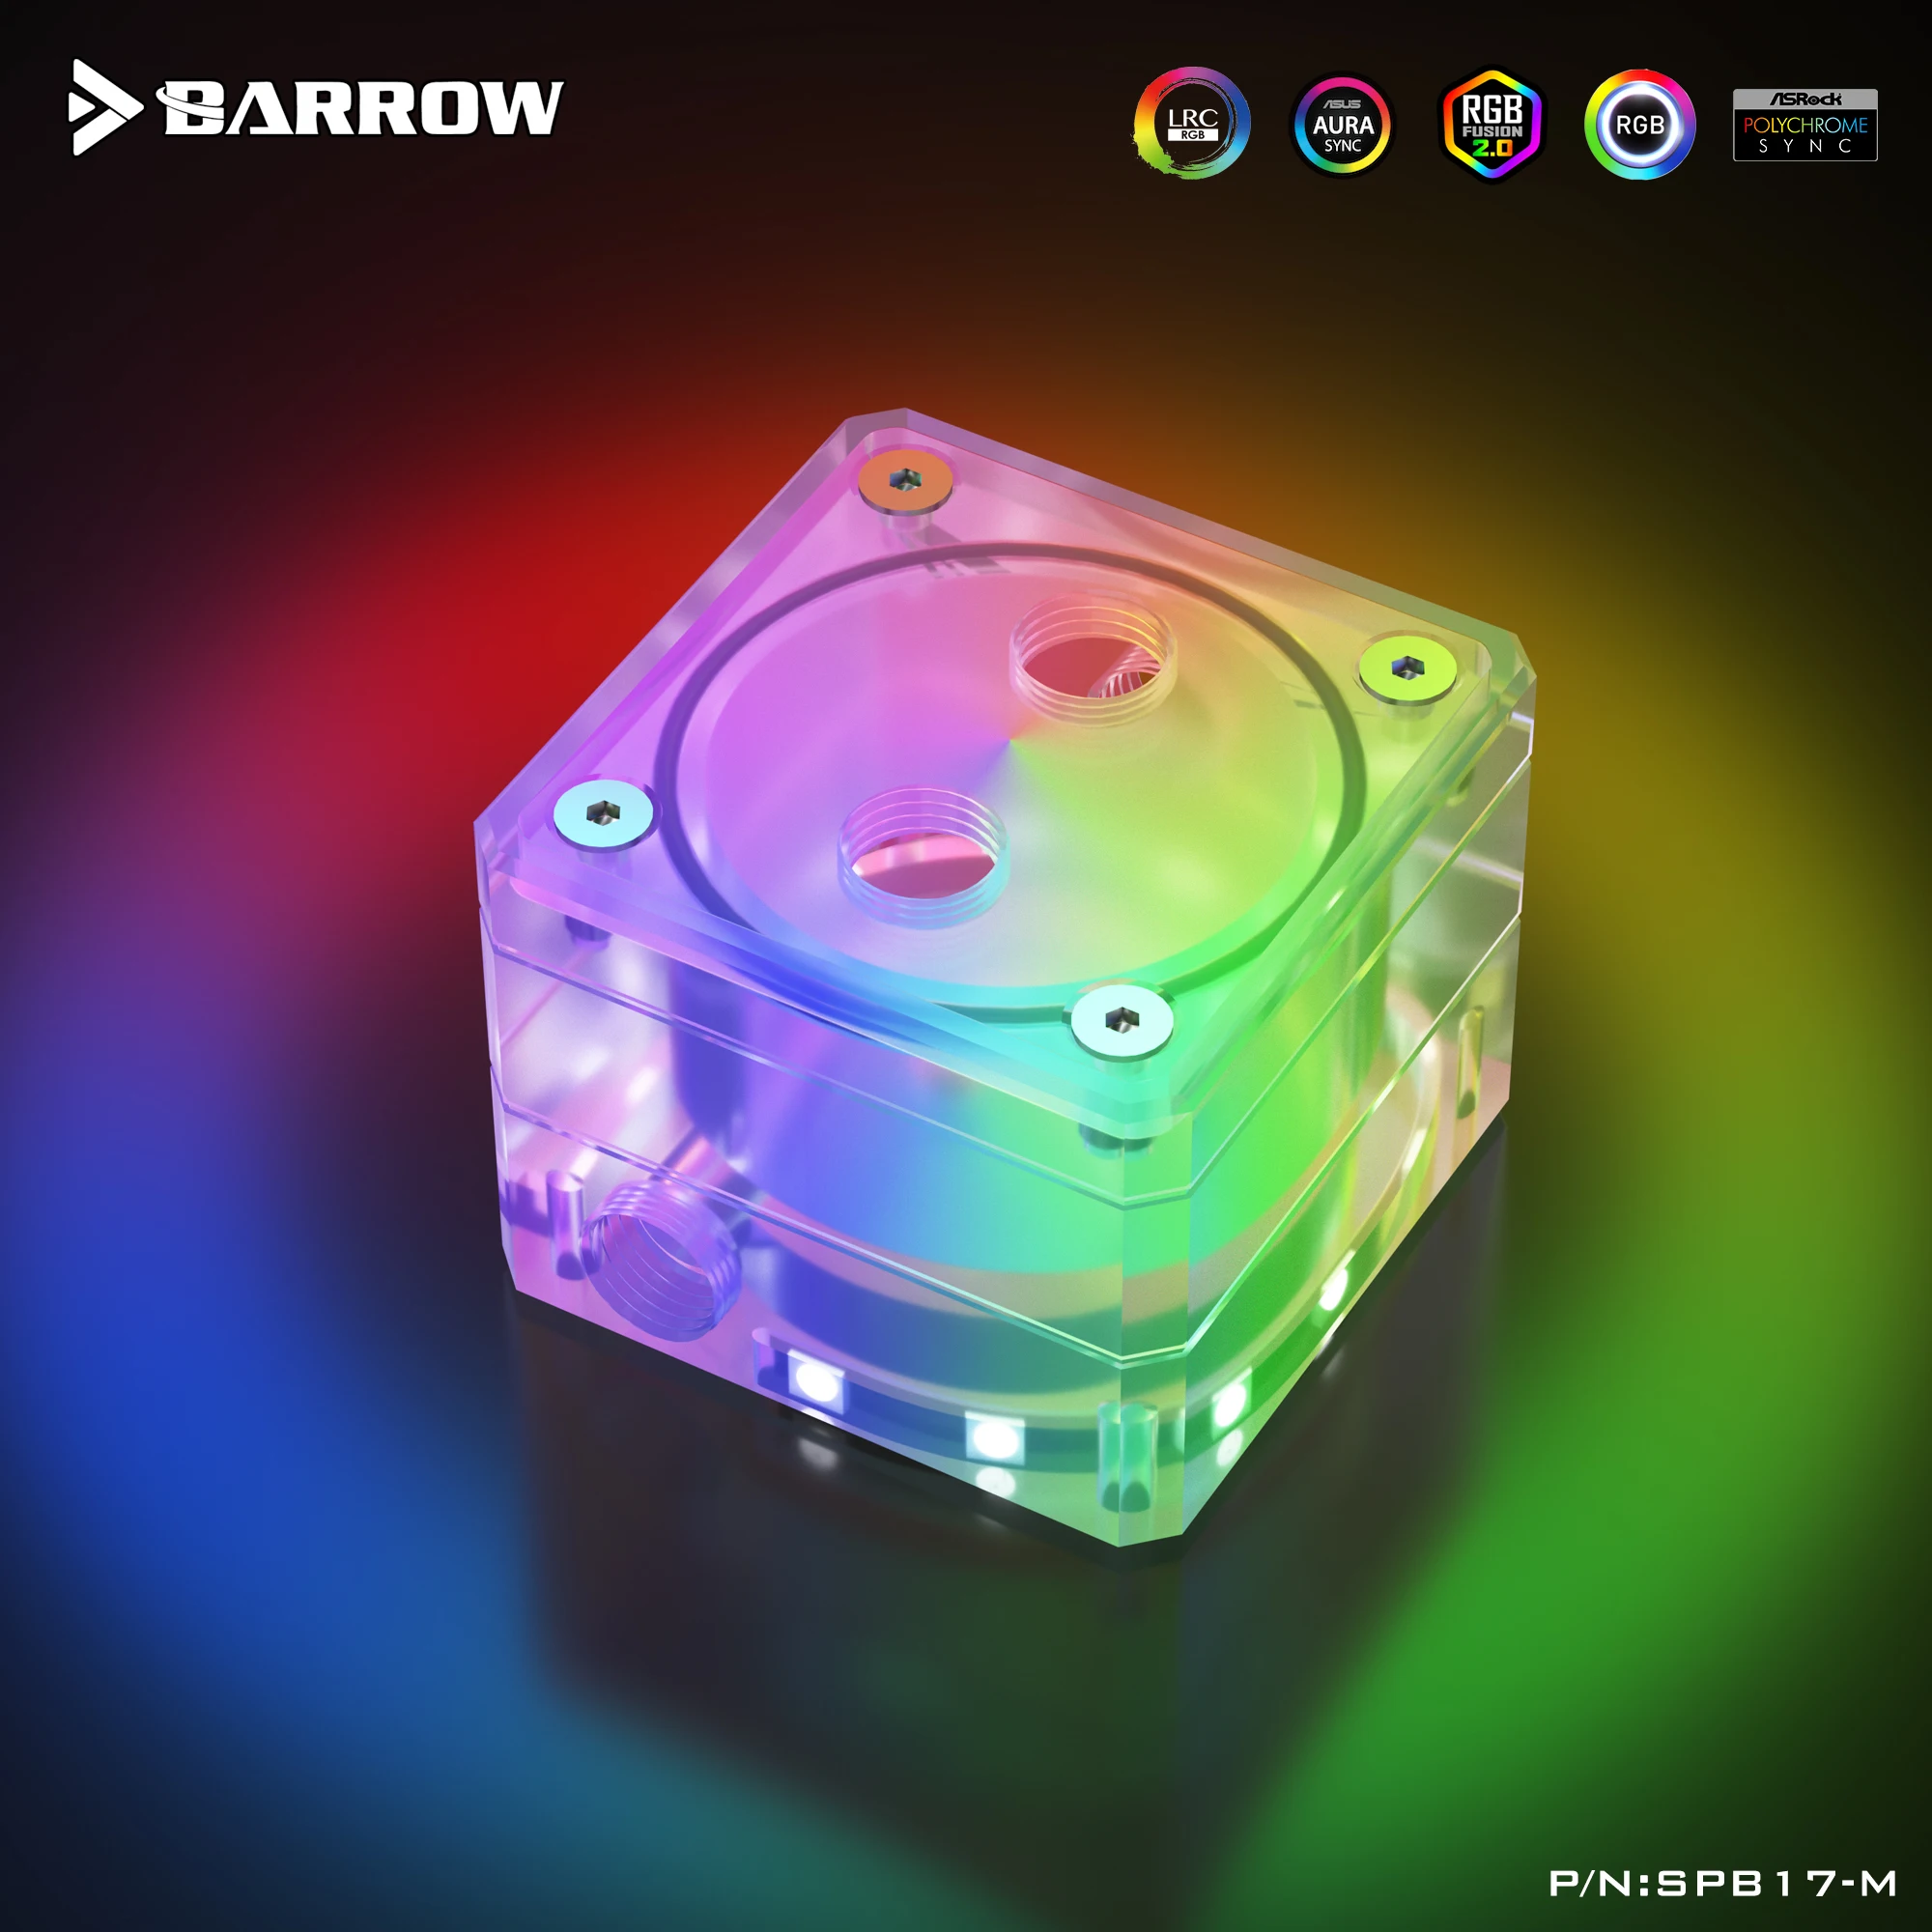 Barrow Mini ITX Резервуар RGB Крышка водяного насоса Расширительная деталь для насоса Box MOD используется для ITX Case LRC 2,0 Акриловый SPB17-M